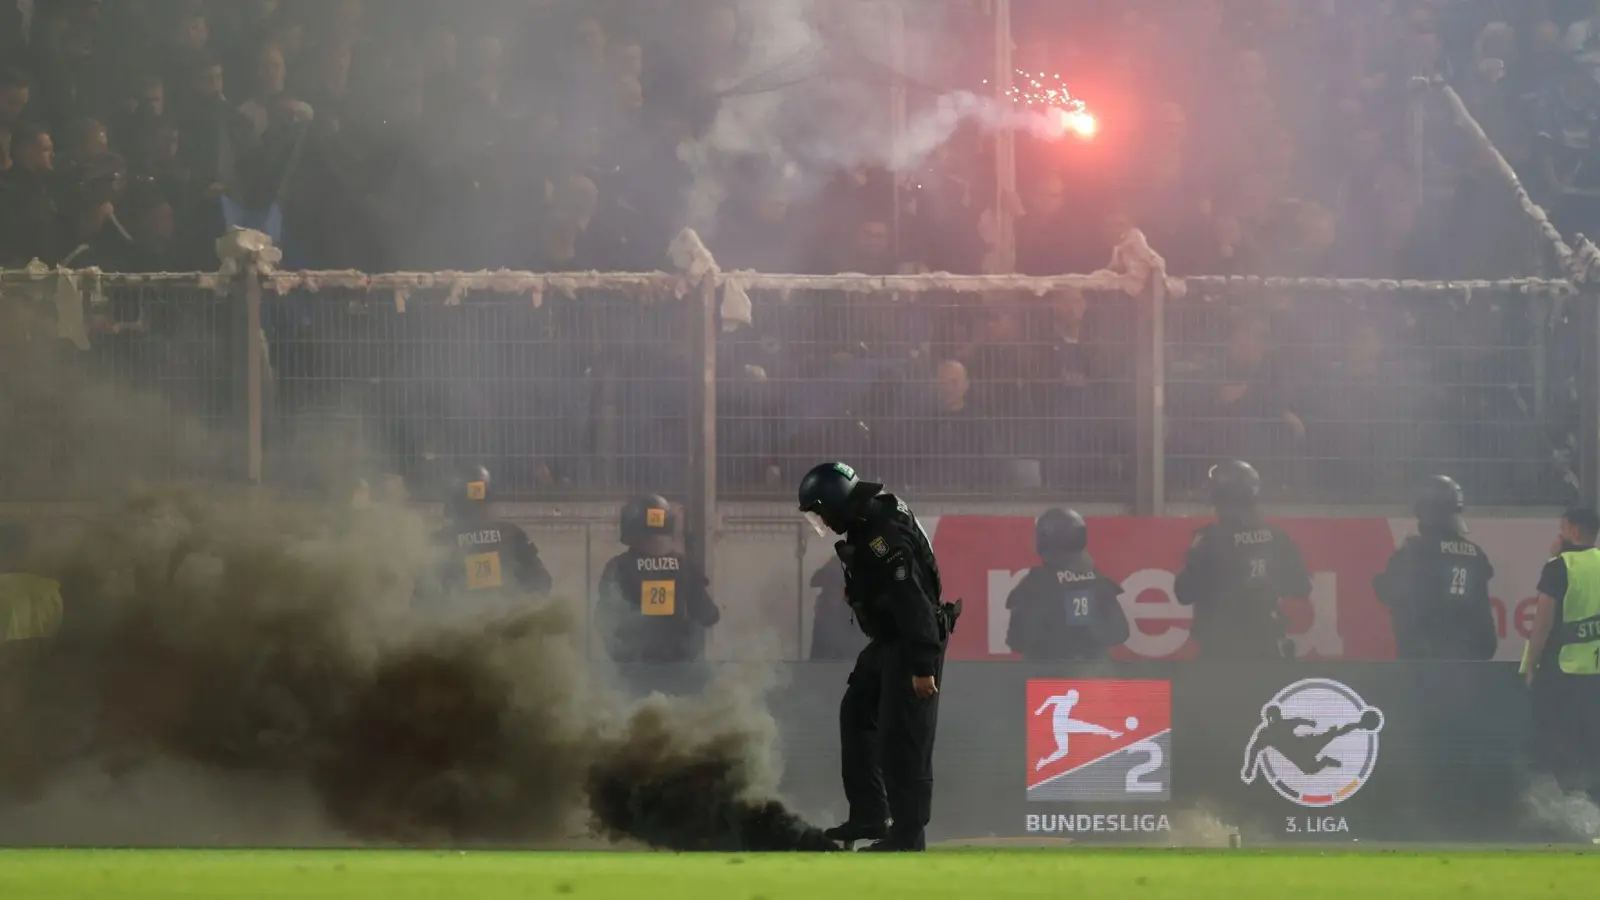 Bielefelder Fans hatten in Wiesbaden Leuchtraketen auf das Spielfeld geworfen. (Foto: Jörg Halisch/dpa)